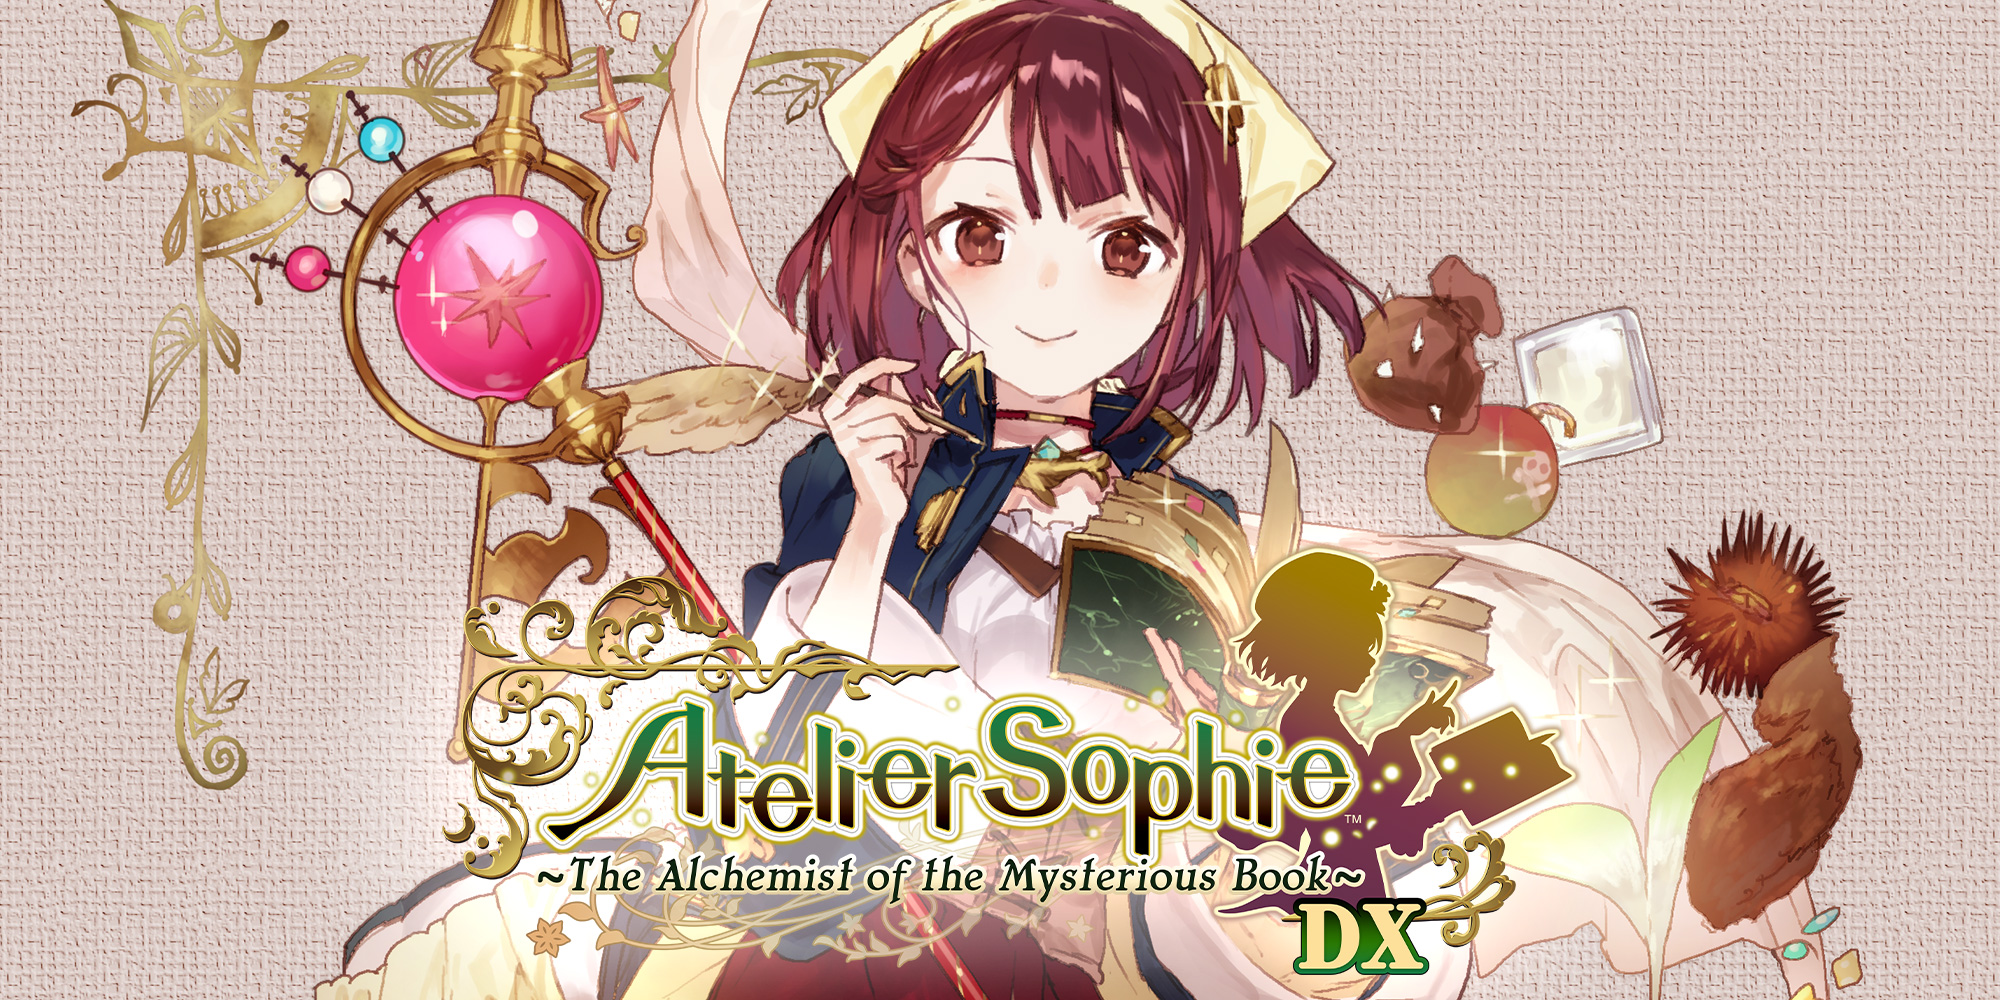 jaquette du jeu vidéo Atelier Sophie: The Alchemist of the Mysterious Book DX